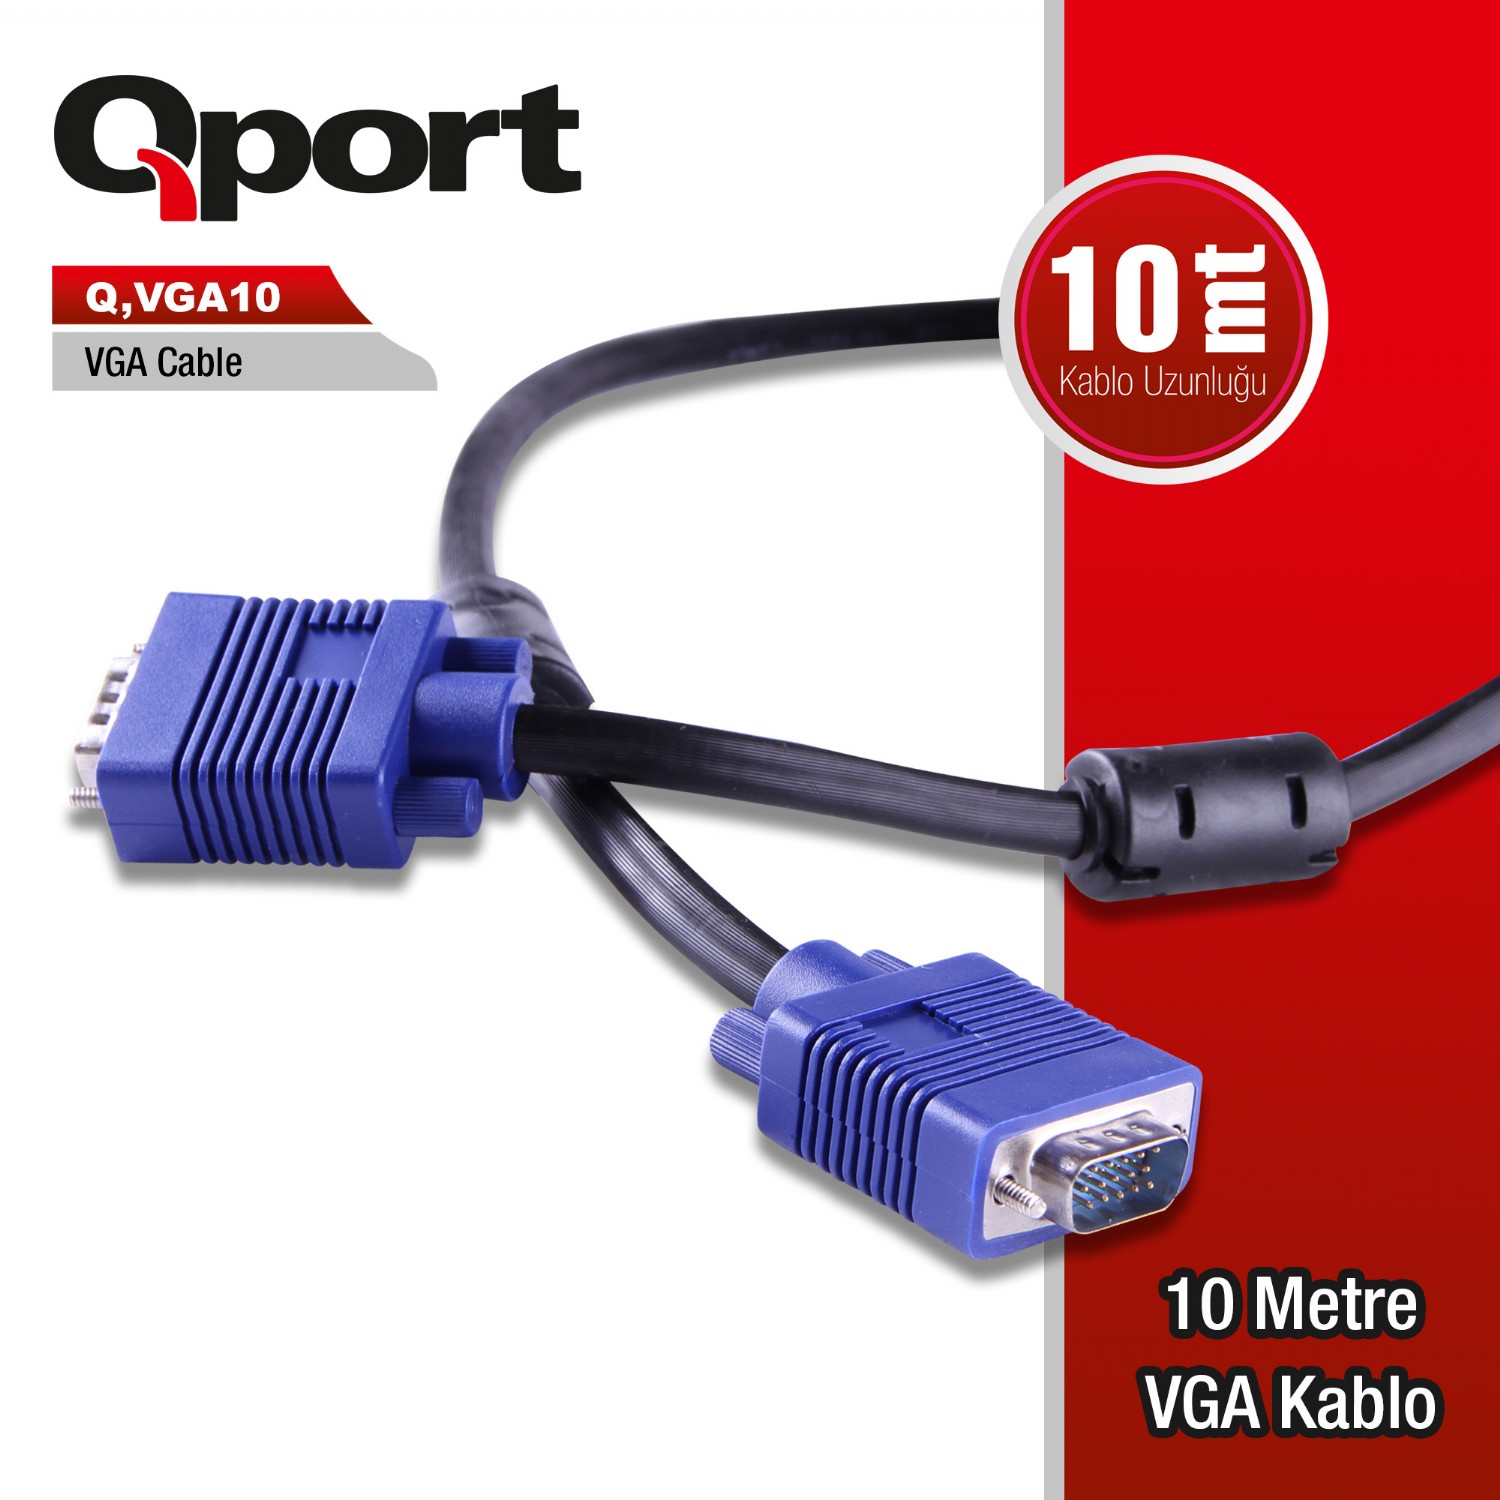 Q-VGA10